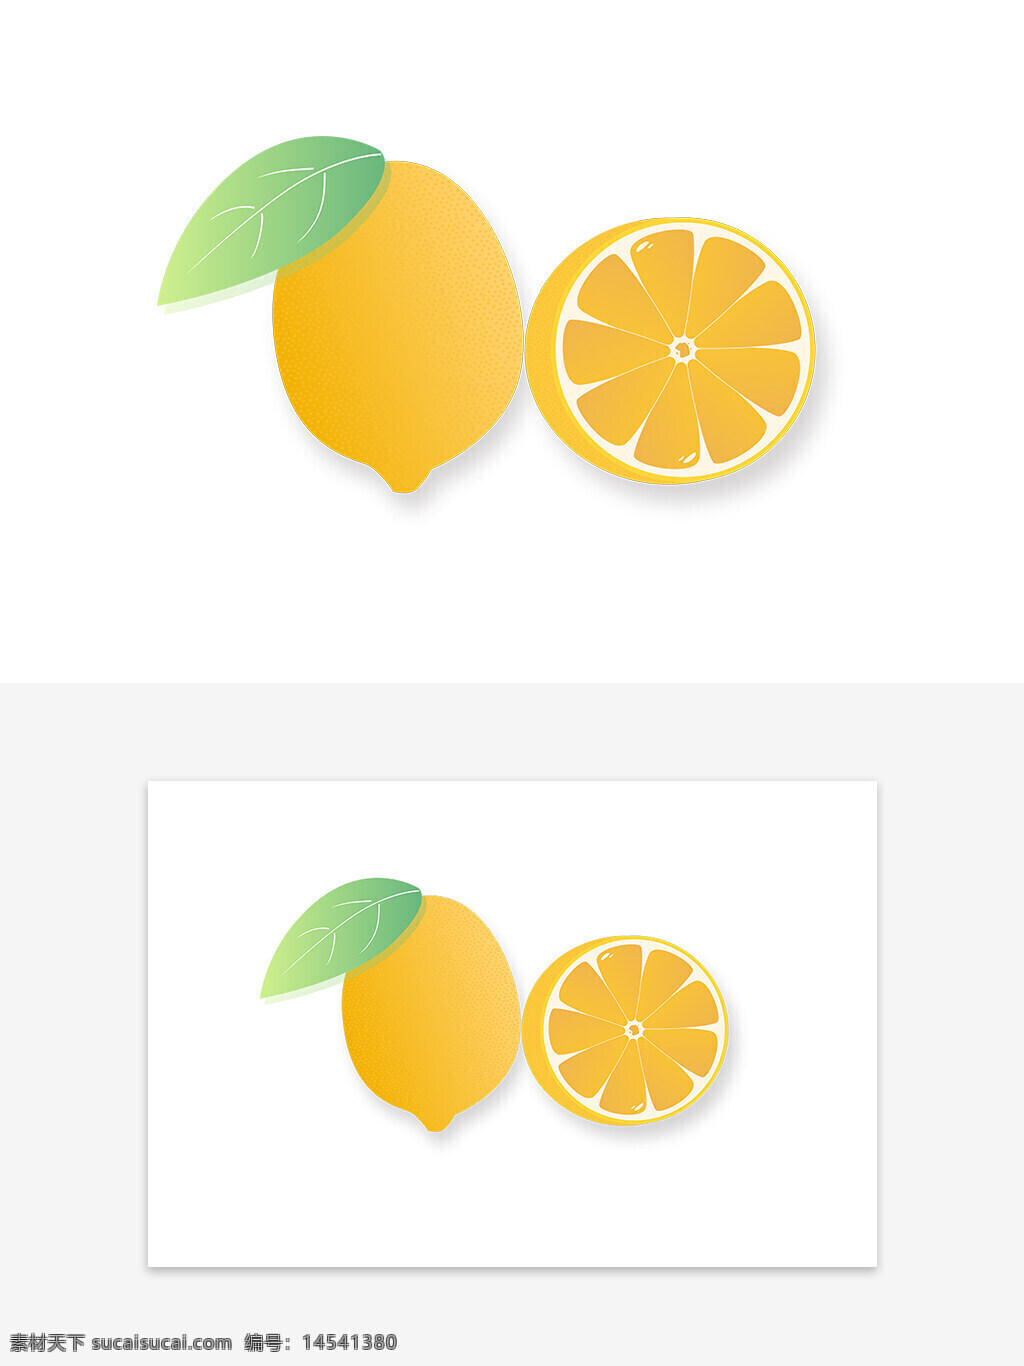 夏天黄色柠檬矢量元素 柠檬元素 柠檬卡通元素 柠檬 夏天元素 水果元素 水果素材